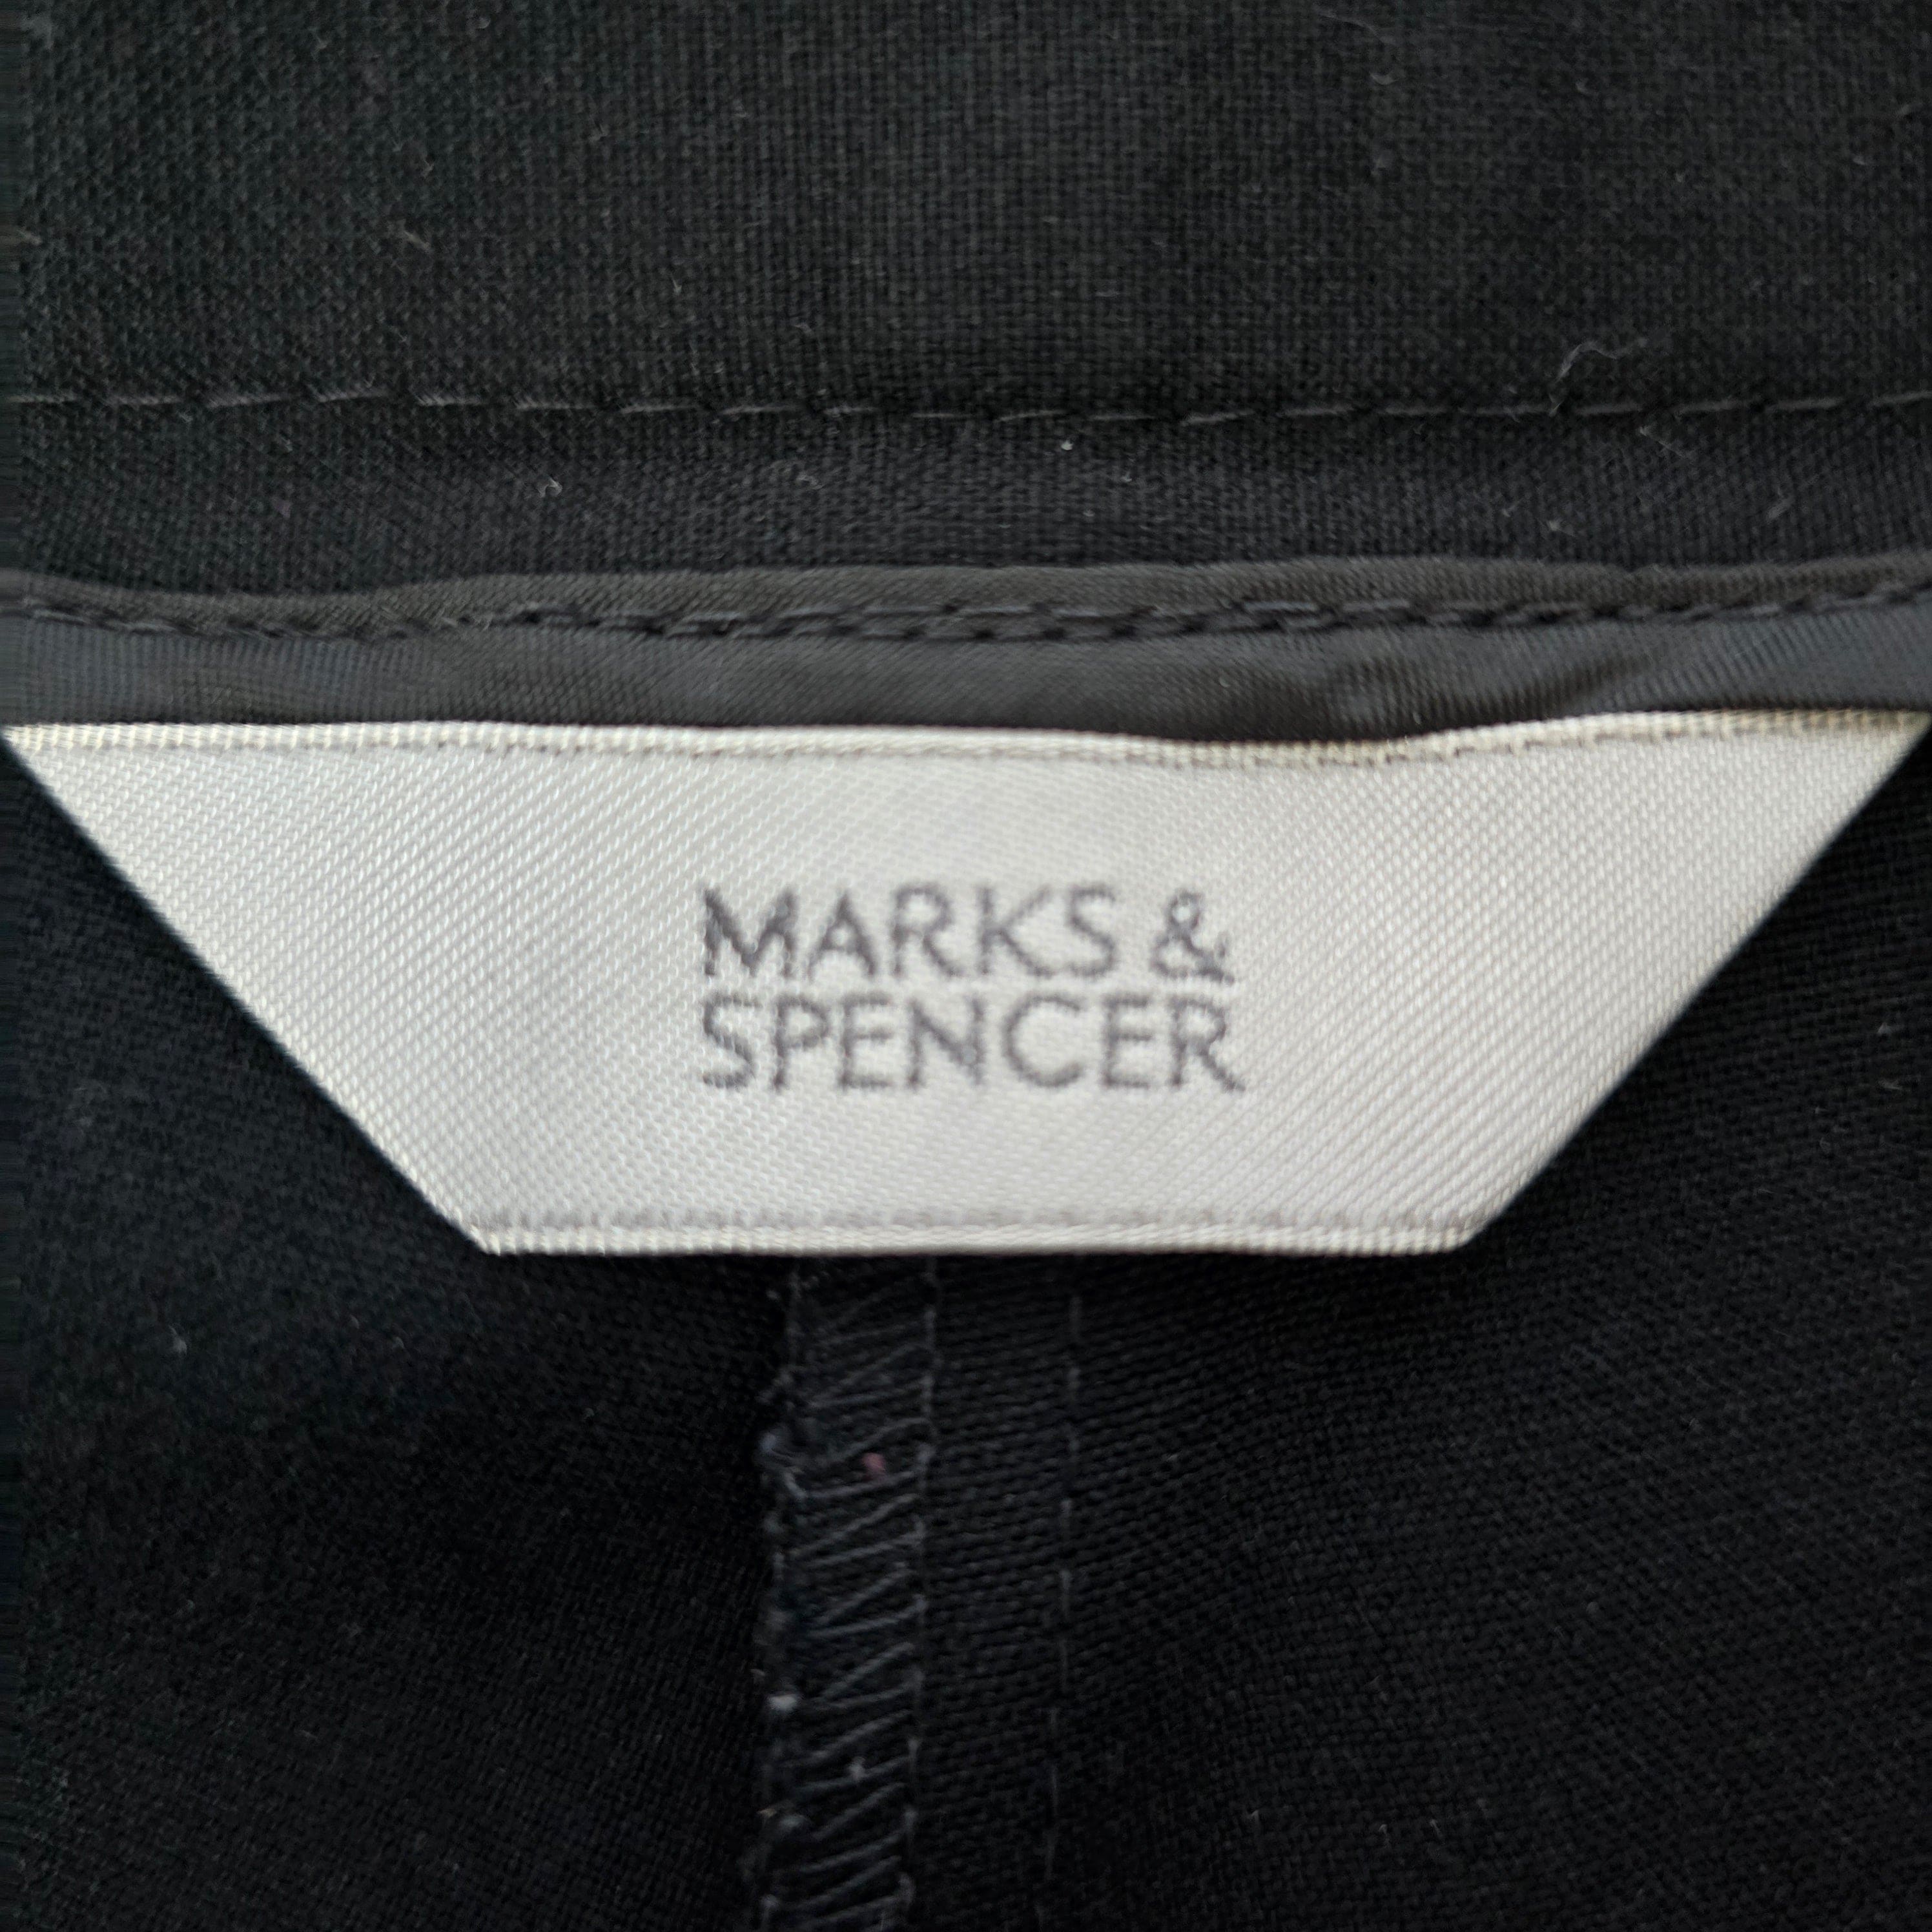 Womens Marks & Spencer Black Trousers UK 10 - 6 - 3597